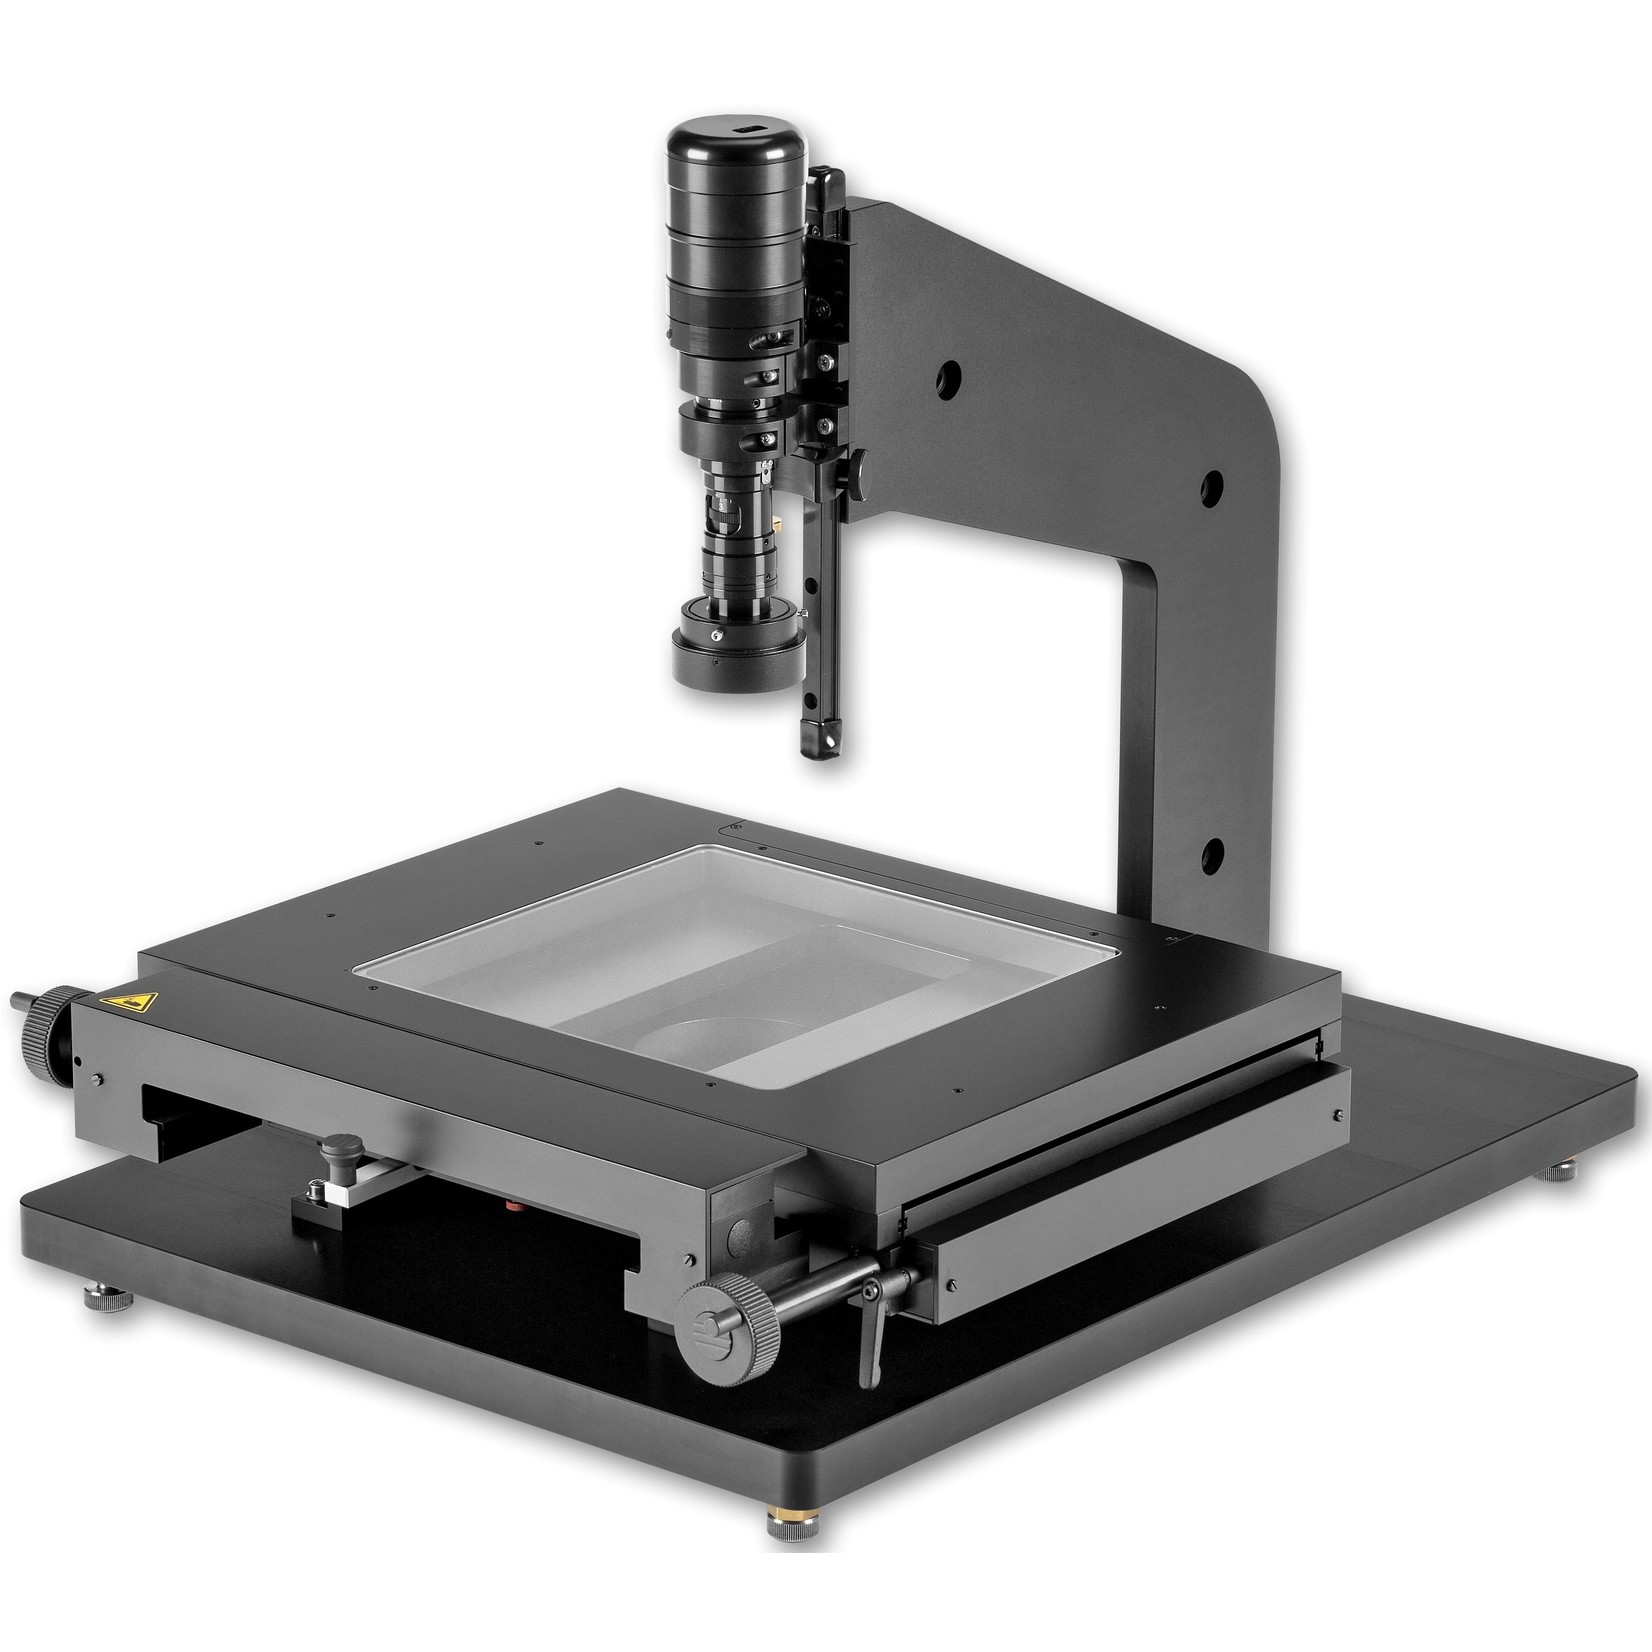 Microscopio di misurazione video USB con tavola di misurazione 200x200 mm, ottica zoom e software di misurazione Metric